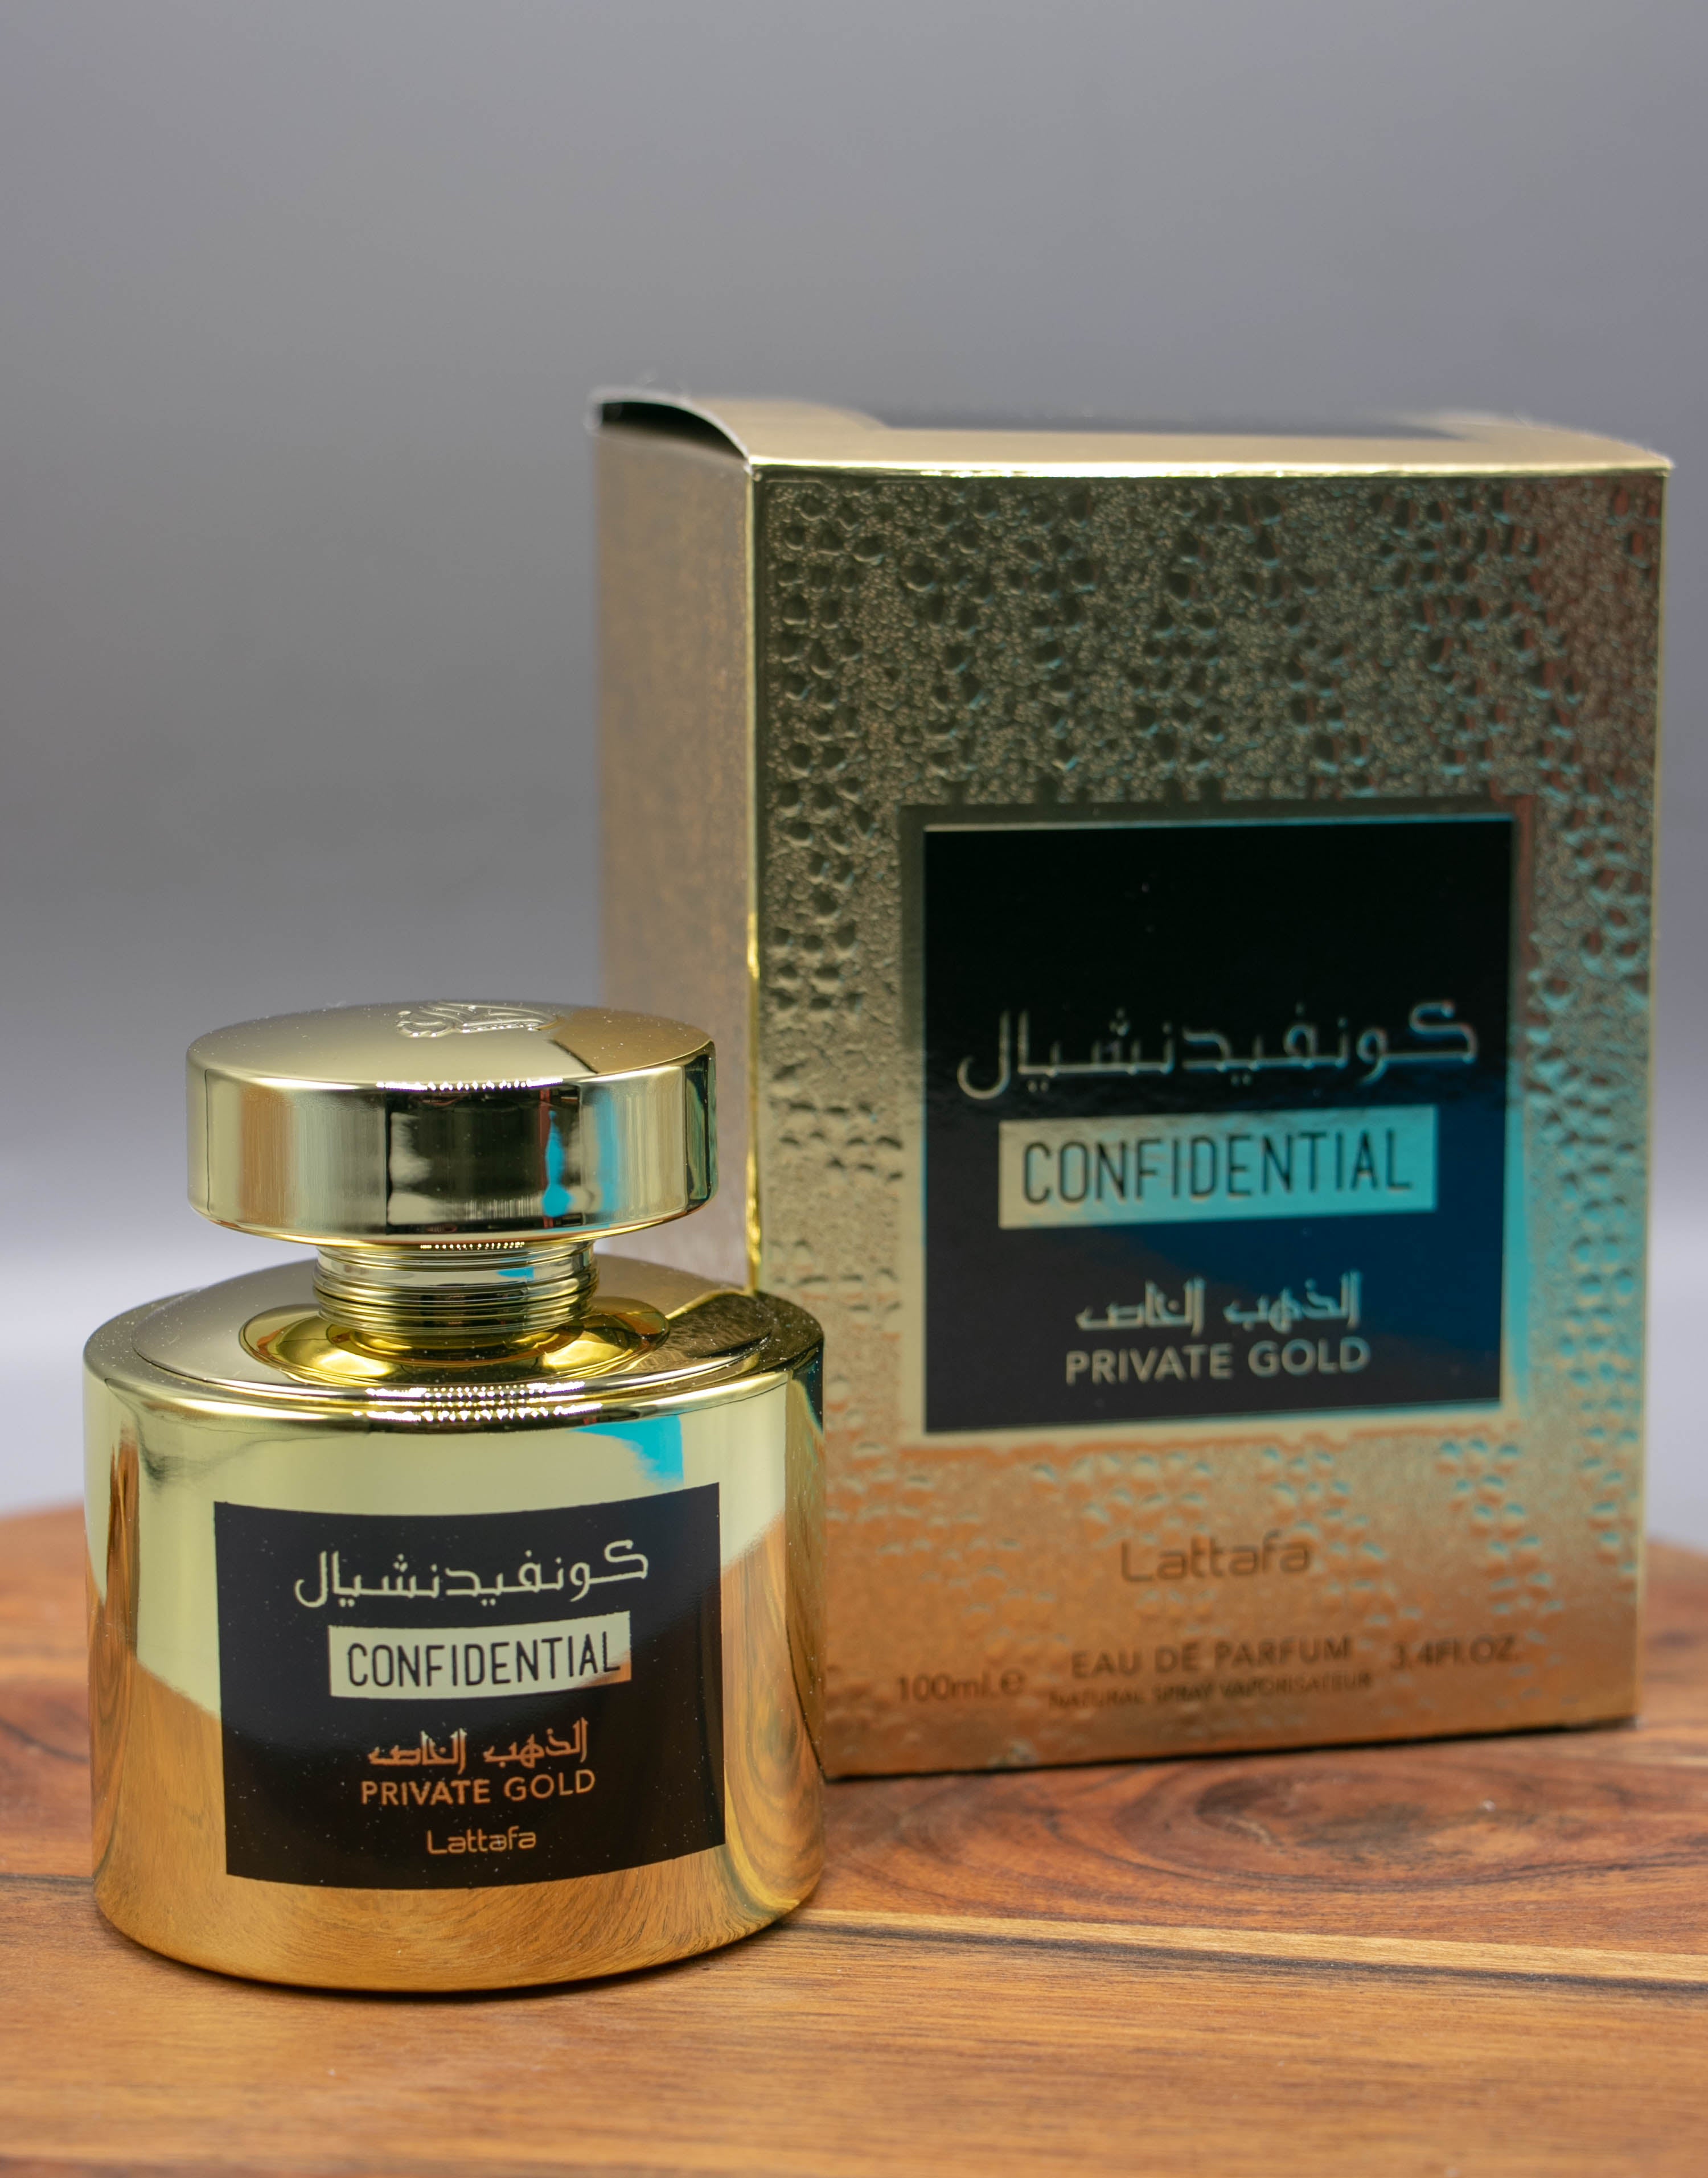 Parfum Confidential private gold (LATTAFA )